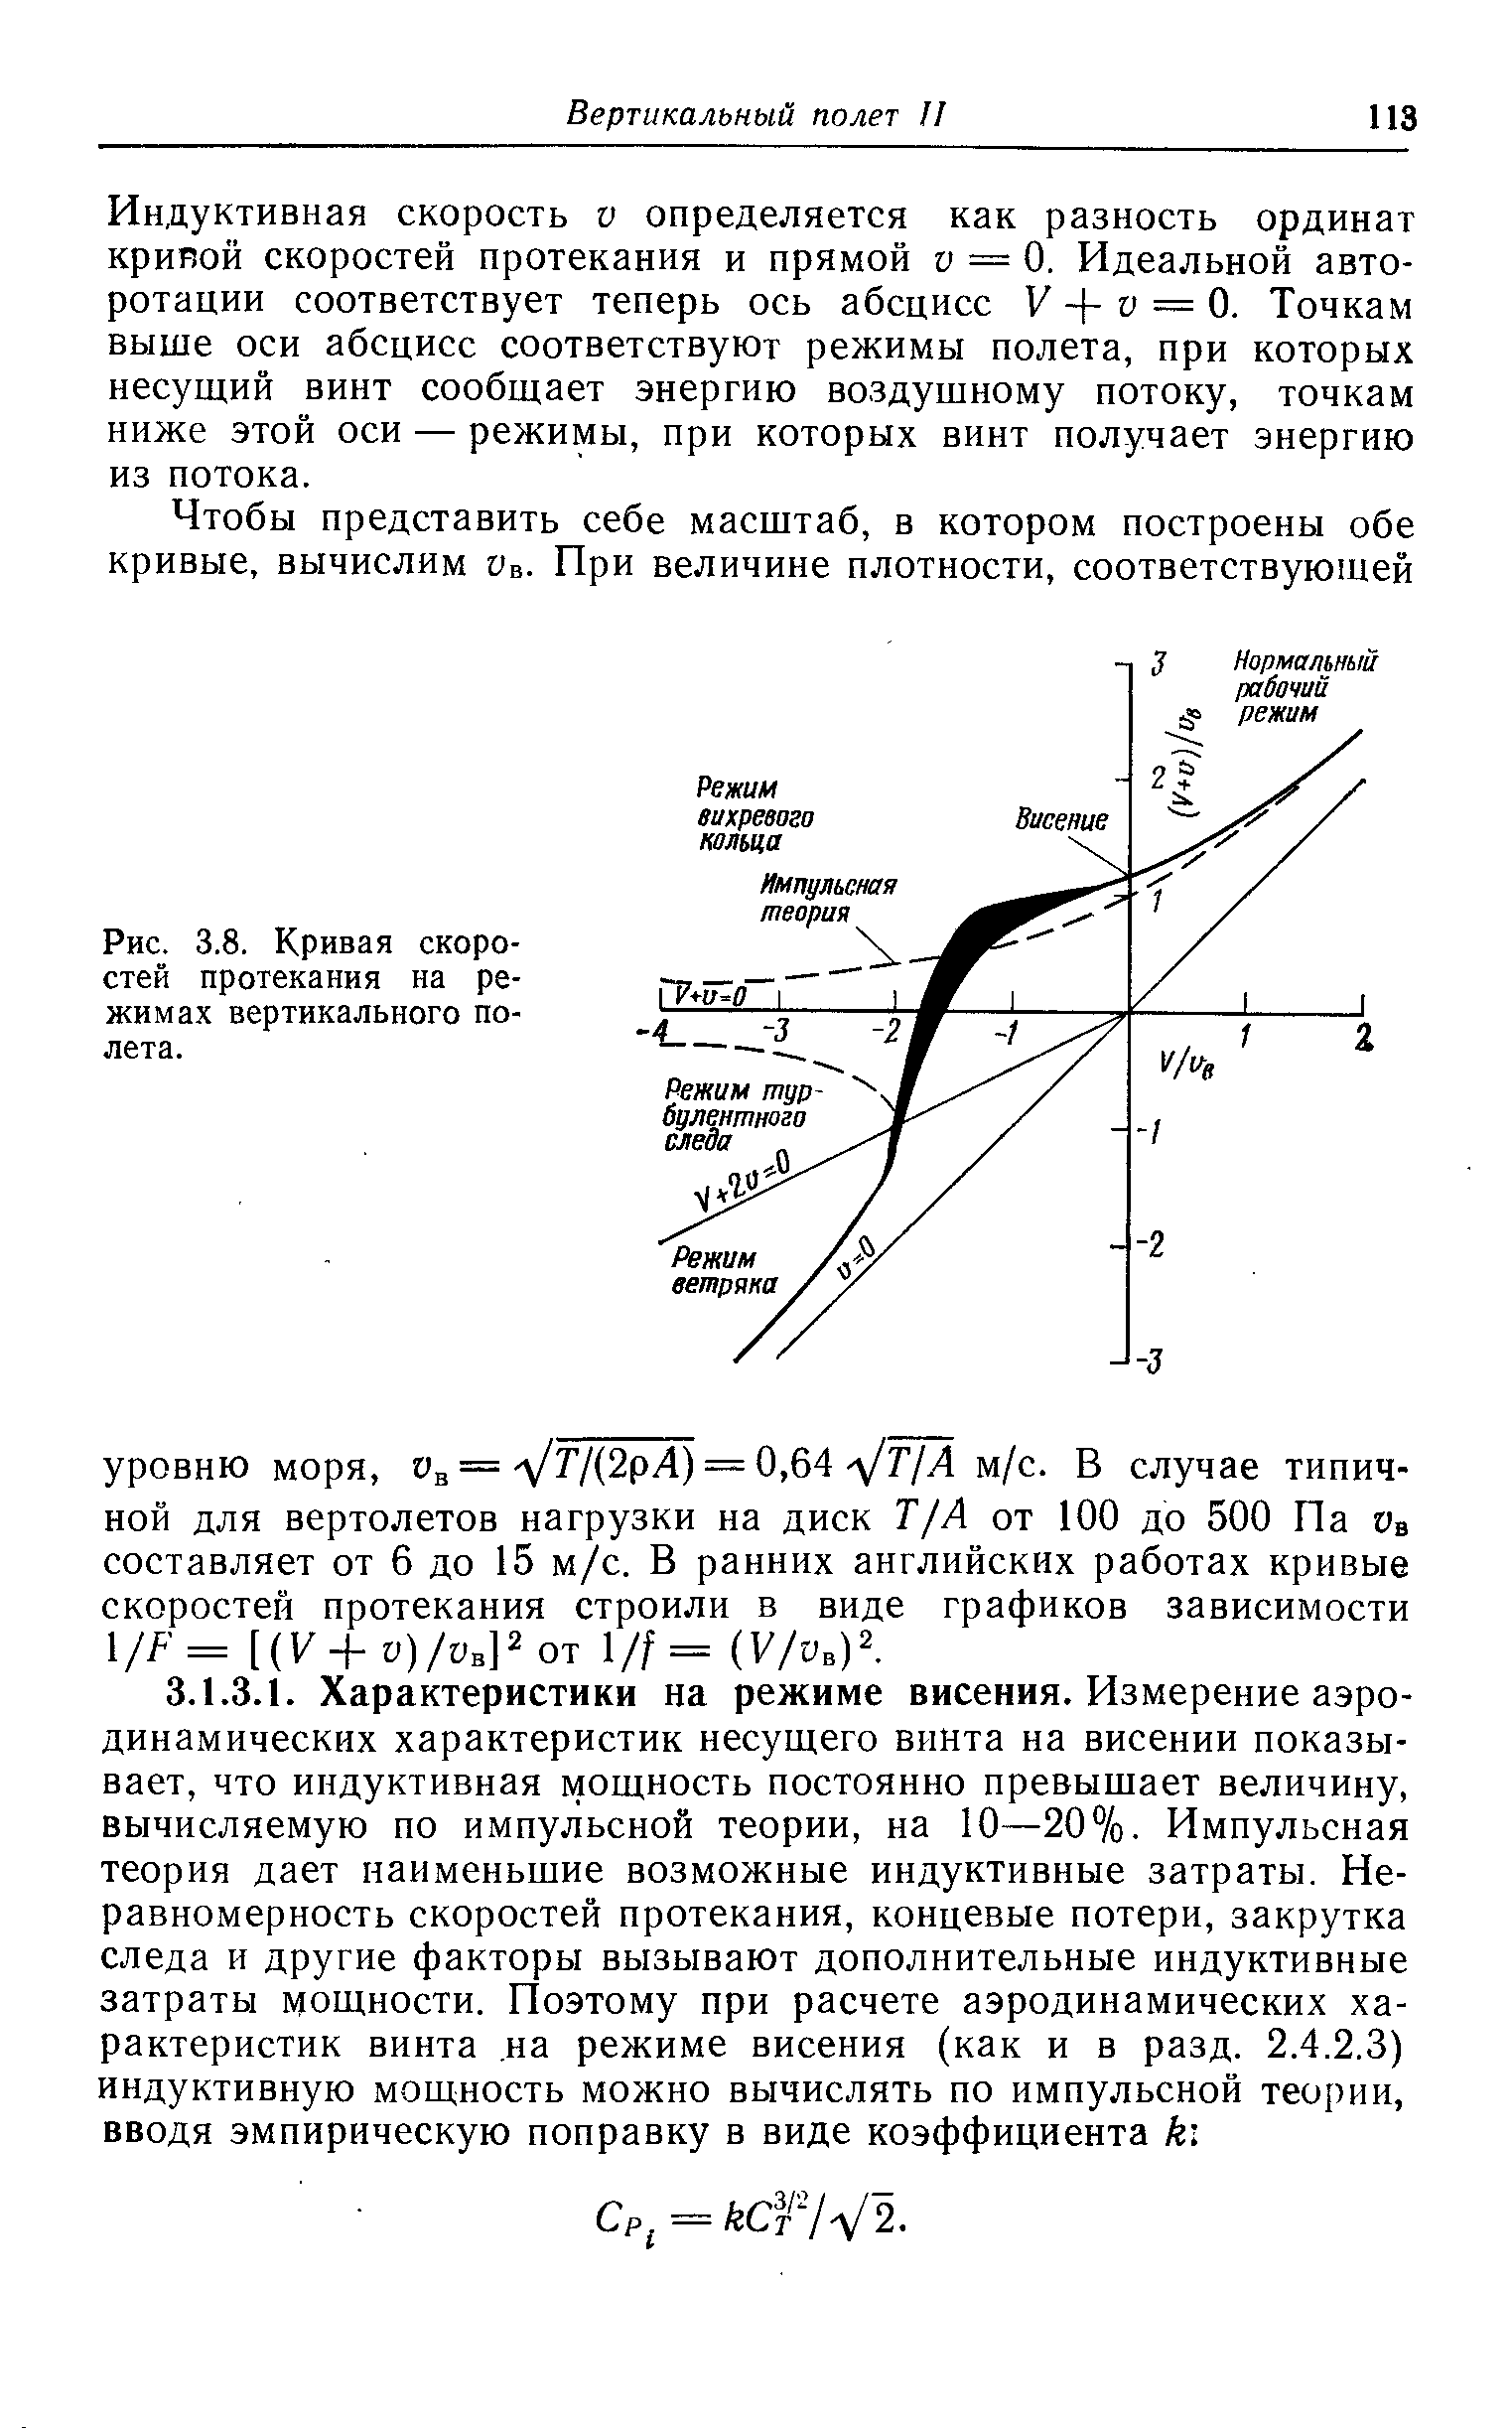 Рис. 3.8. Кривая скоростей протекания на режимах вертикального полета.
